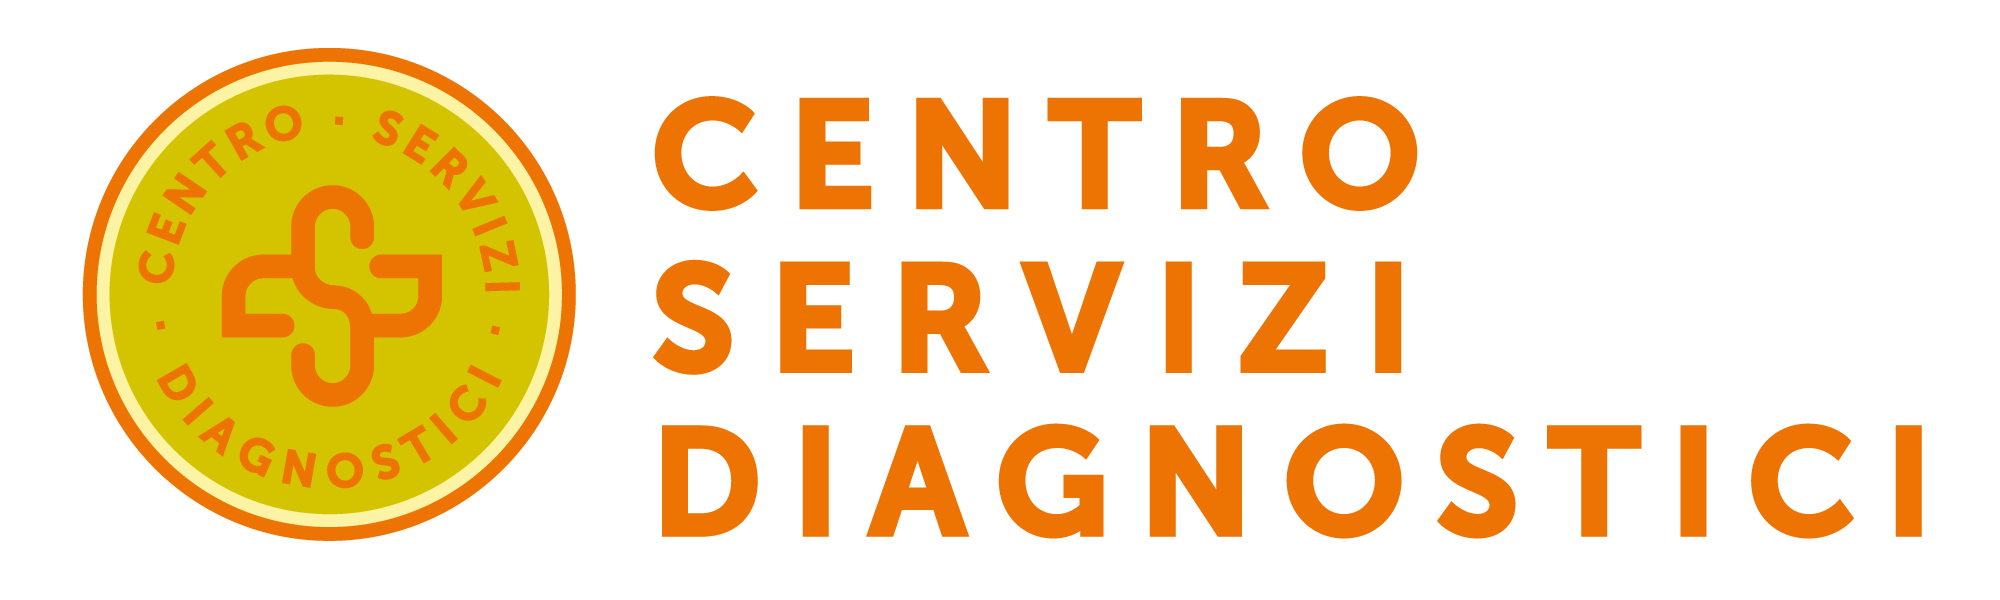 Centro Servizi Diagnostici